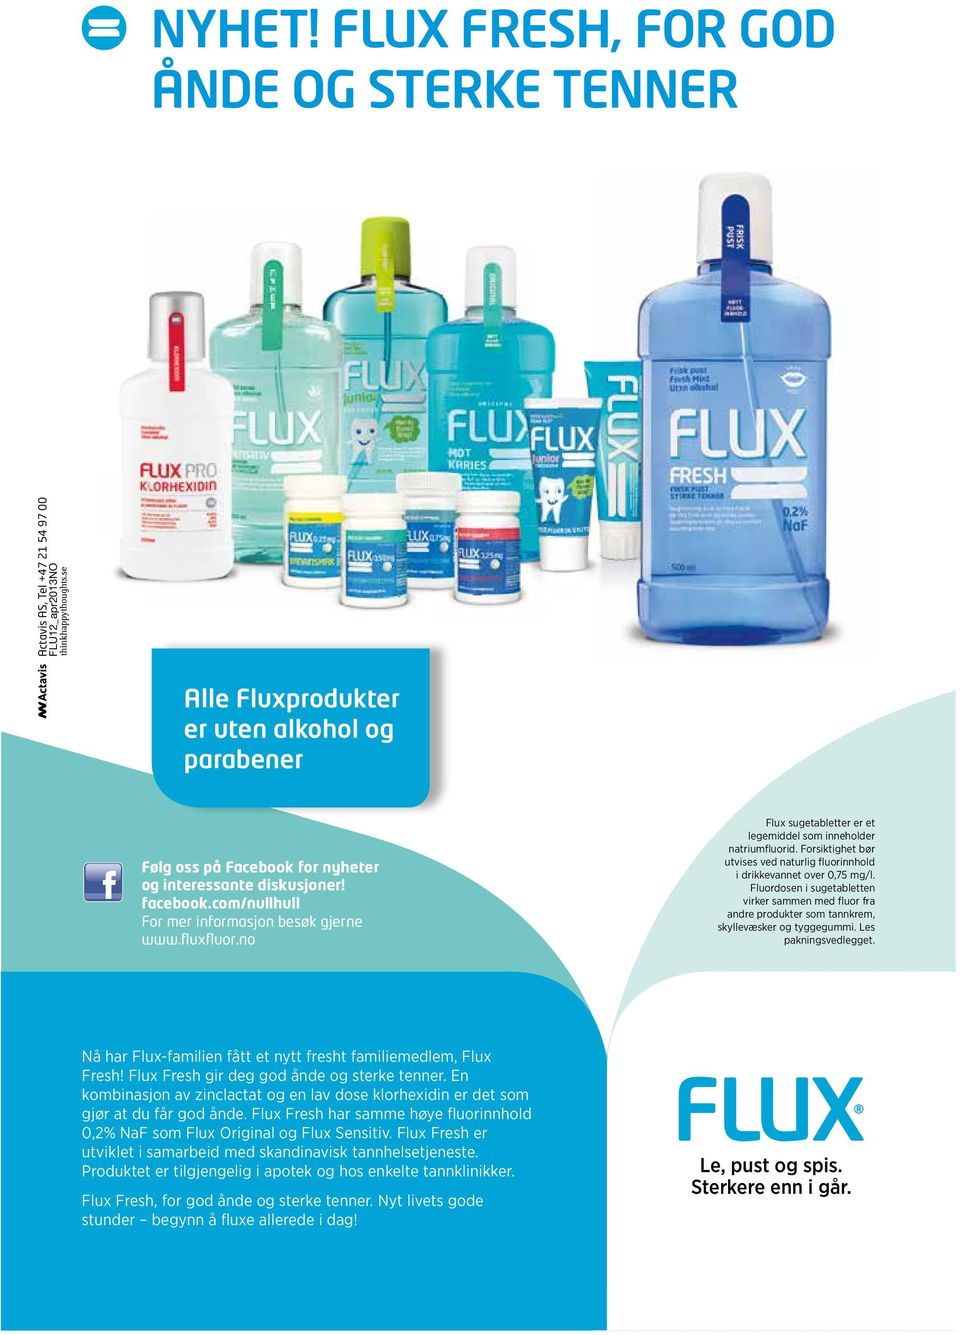 facebook.com/nullhull For mer informasjon besøk gjerne www.fluxfluor.no Flux sugetabletter er et legemiddel som inneholder natriumfluorid.